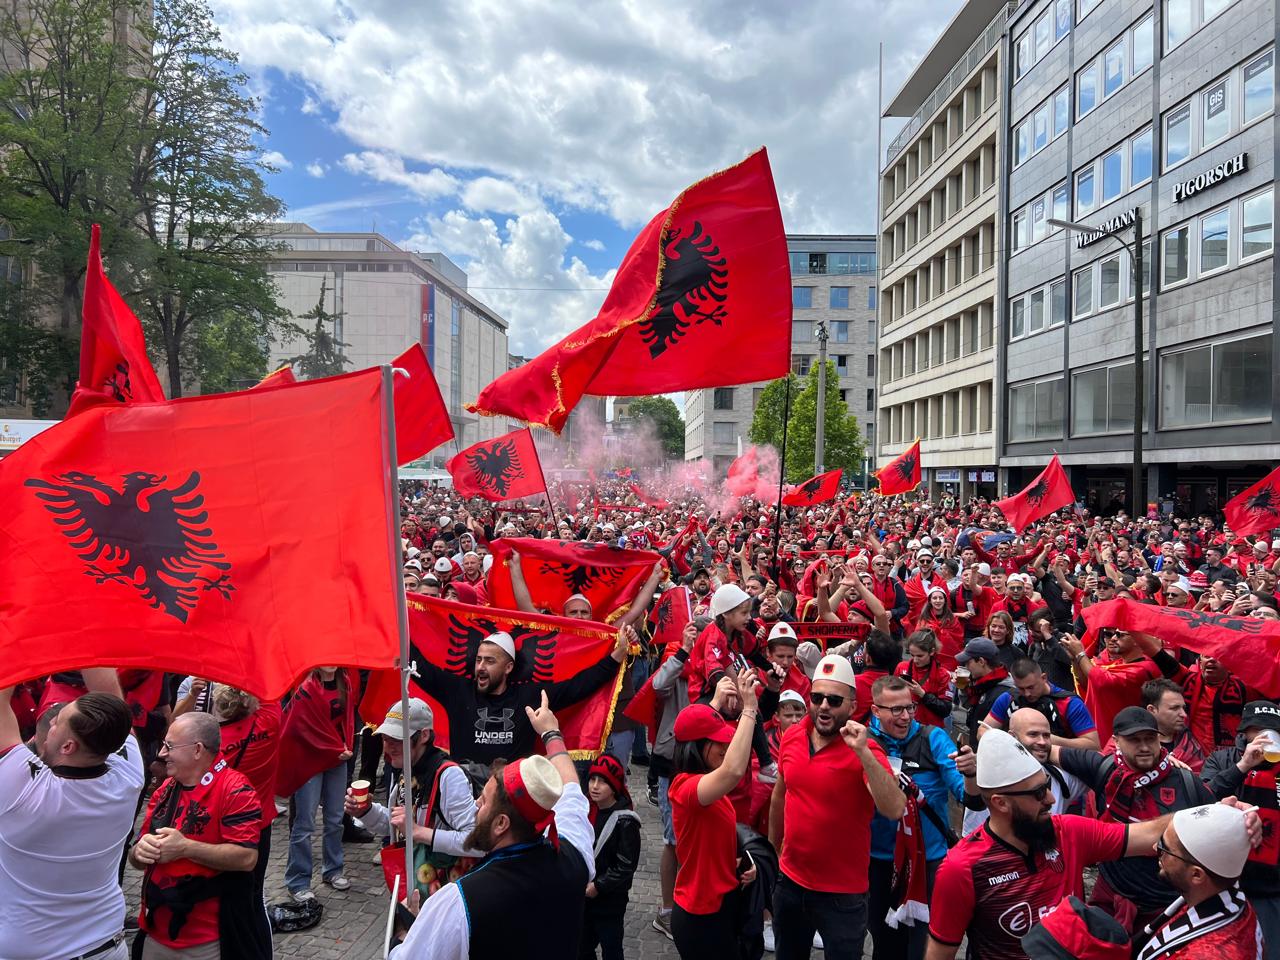 Jehonë kuqezi në Dortmund, tribunat e stadiumit vishen kuqezi! Report Tv sjell atmosferën elektrizuese - Shqiptarja.com